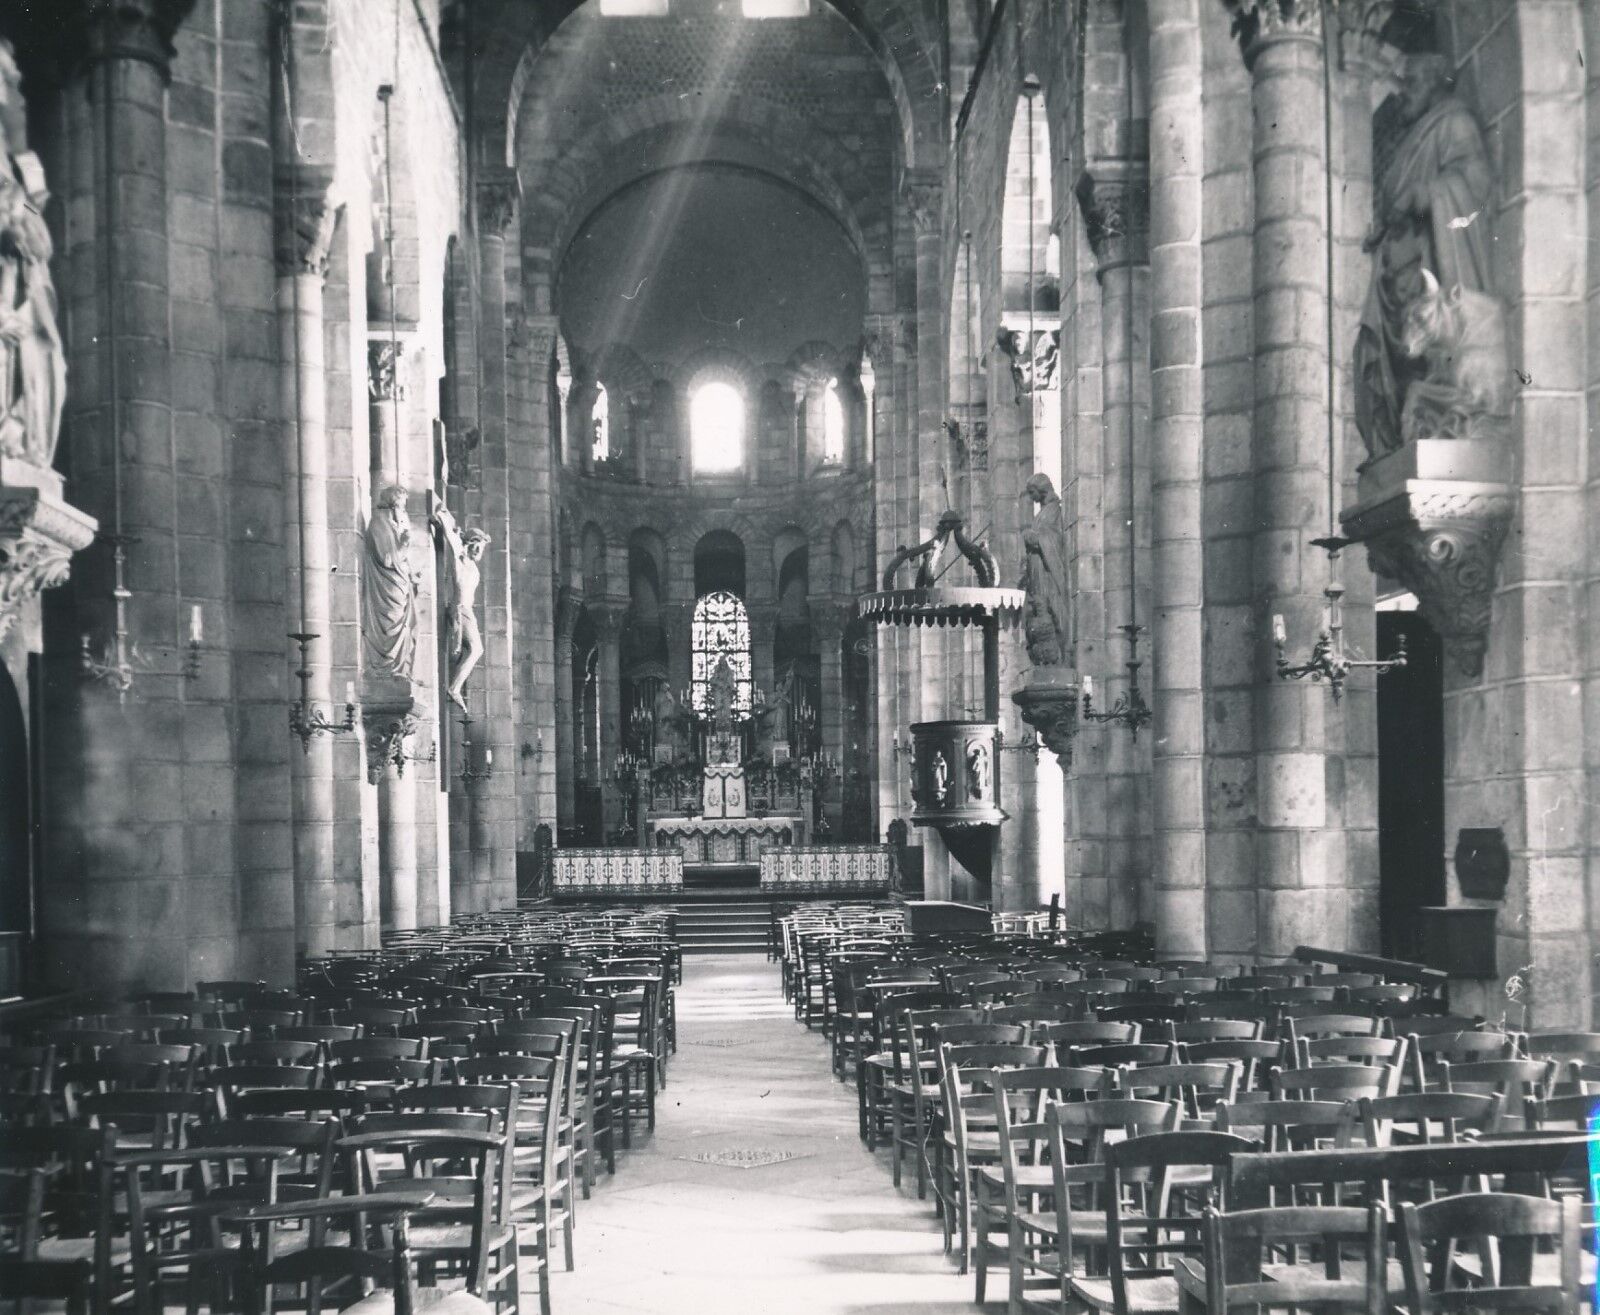 CLERMONT FERRAND c. 1900-20 - nave church of Notre Dame du Port Puy de Dôme - NV 1424